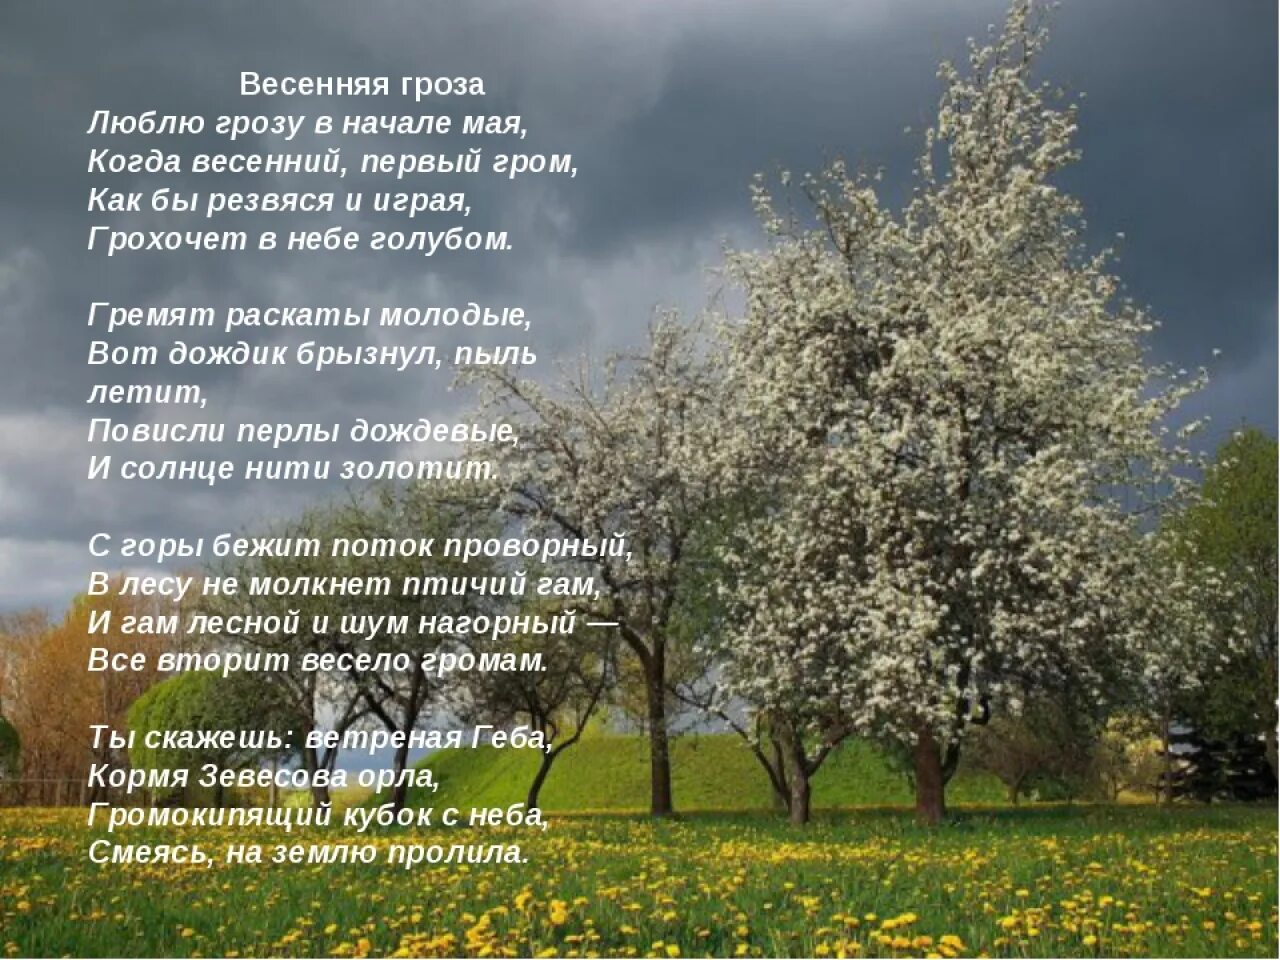 Стих люблю в начале мая. Весенние стихи. Стихи про май короткие. Стих про весну. Люблю грозу в начале мая стихотворение.